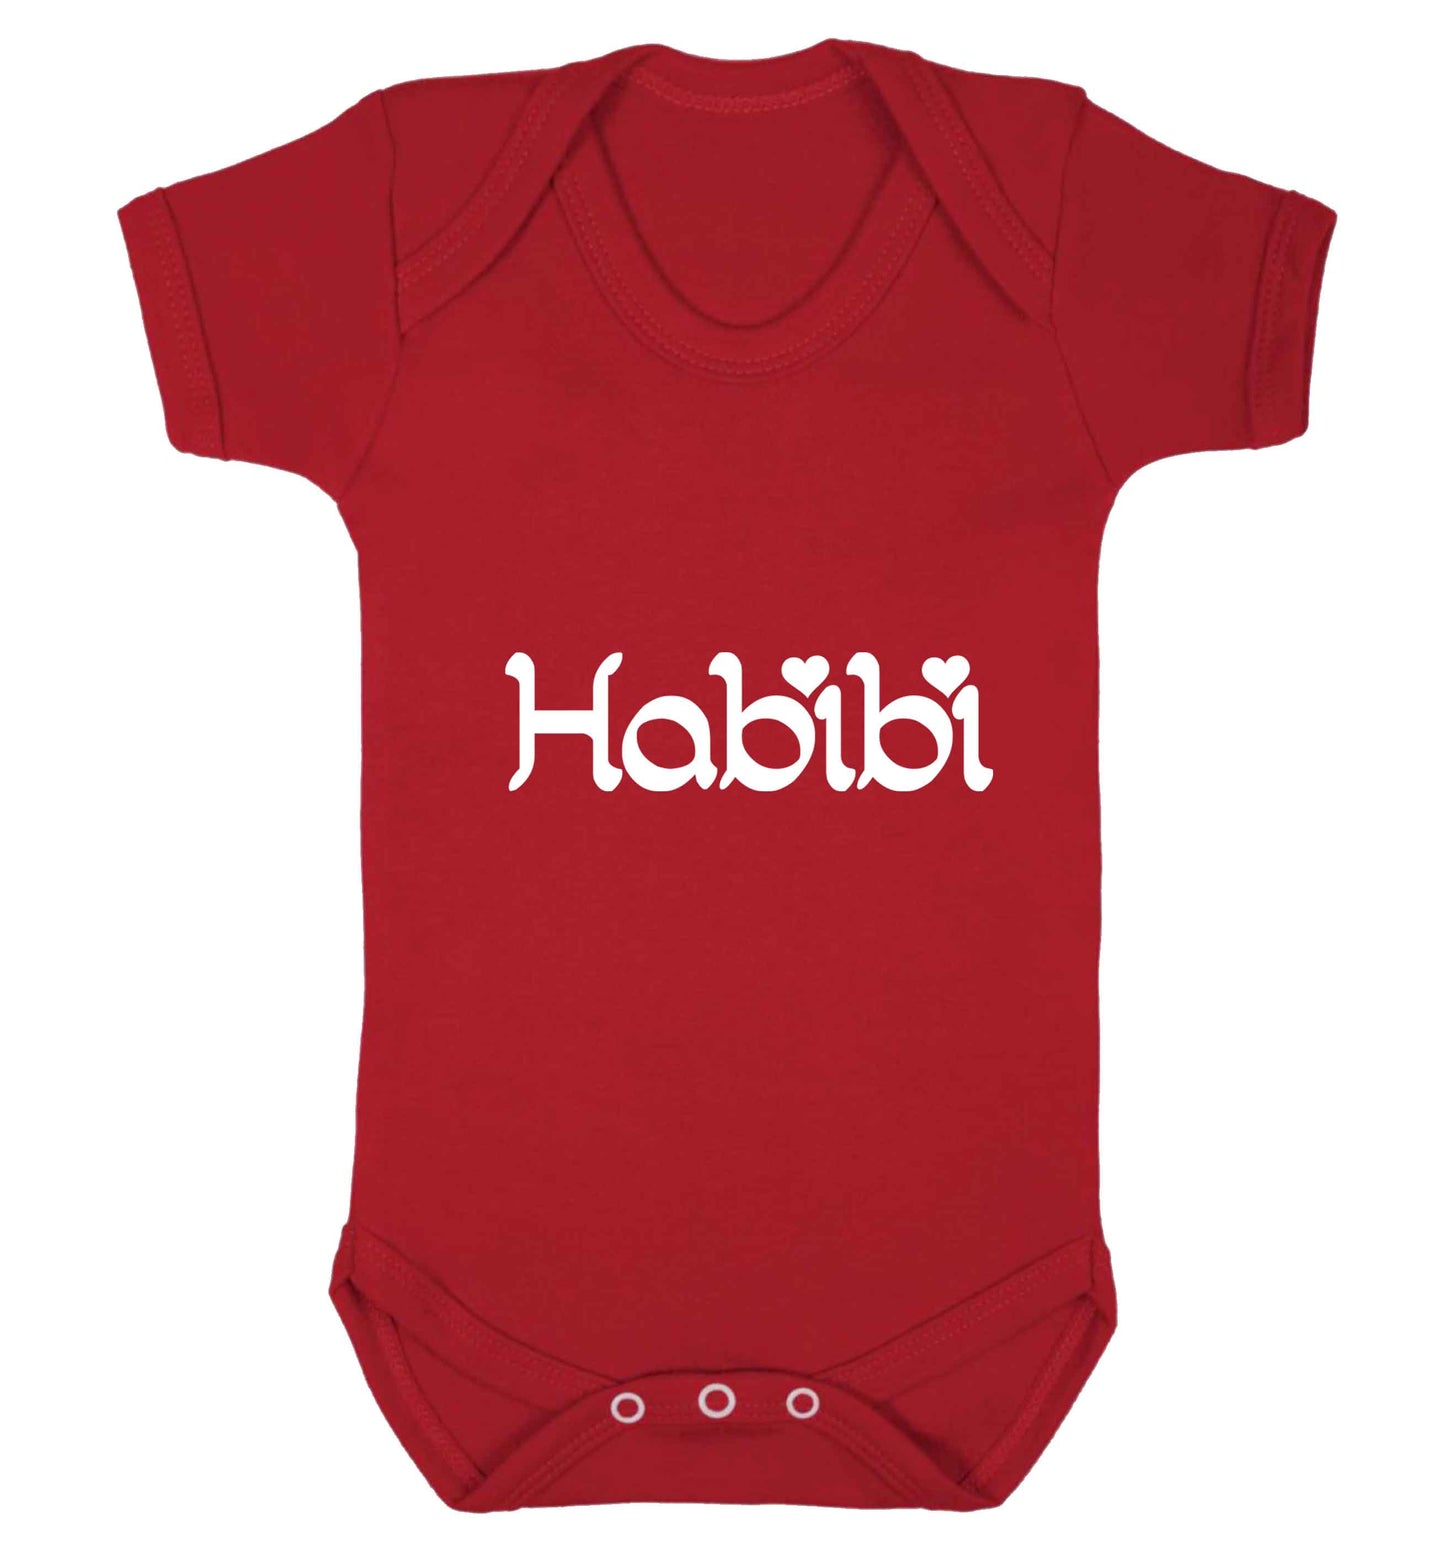 Habibi baby vest red 18-24 months